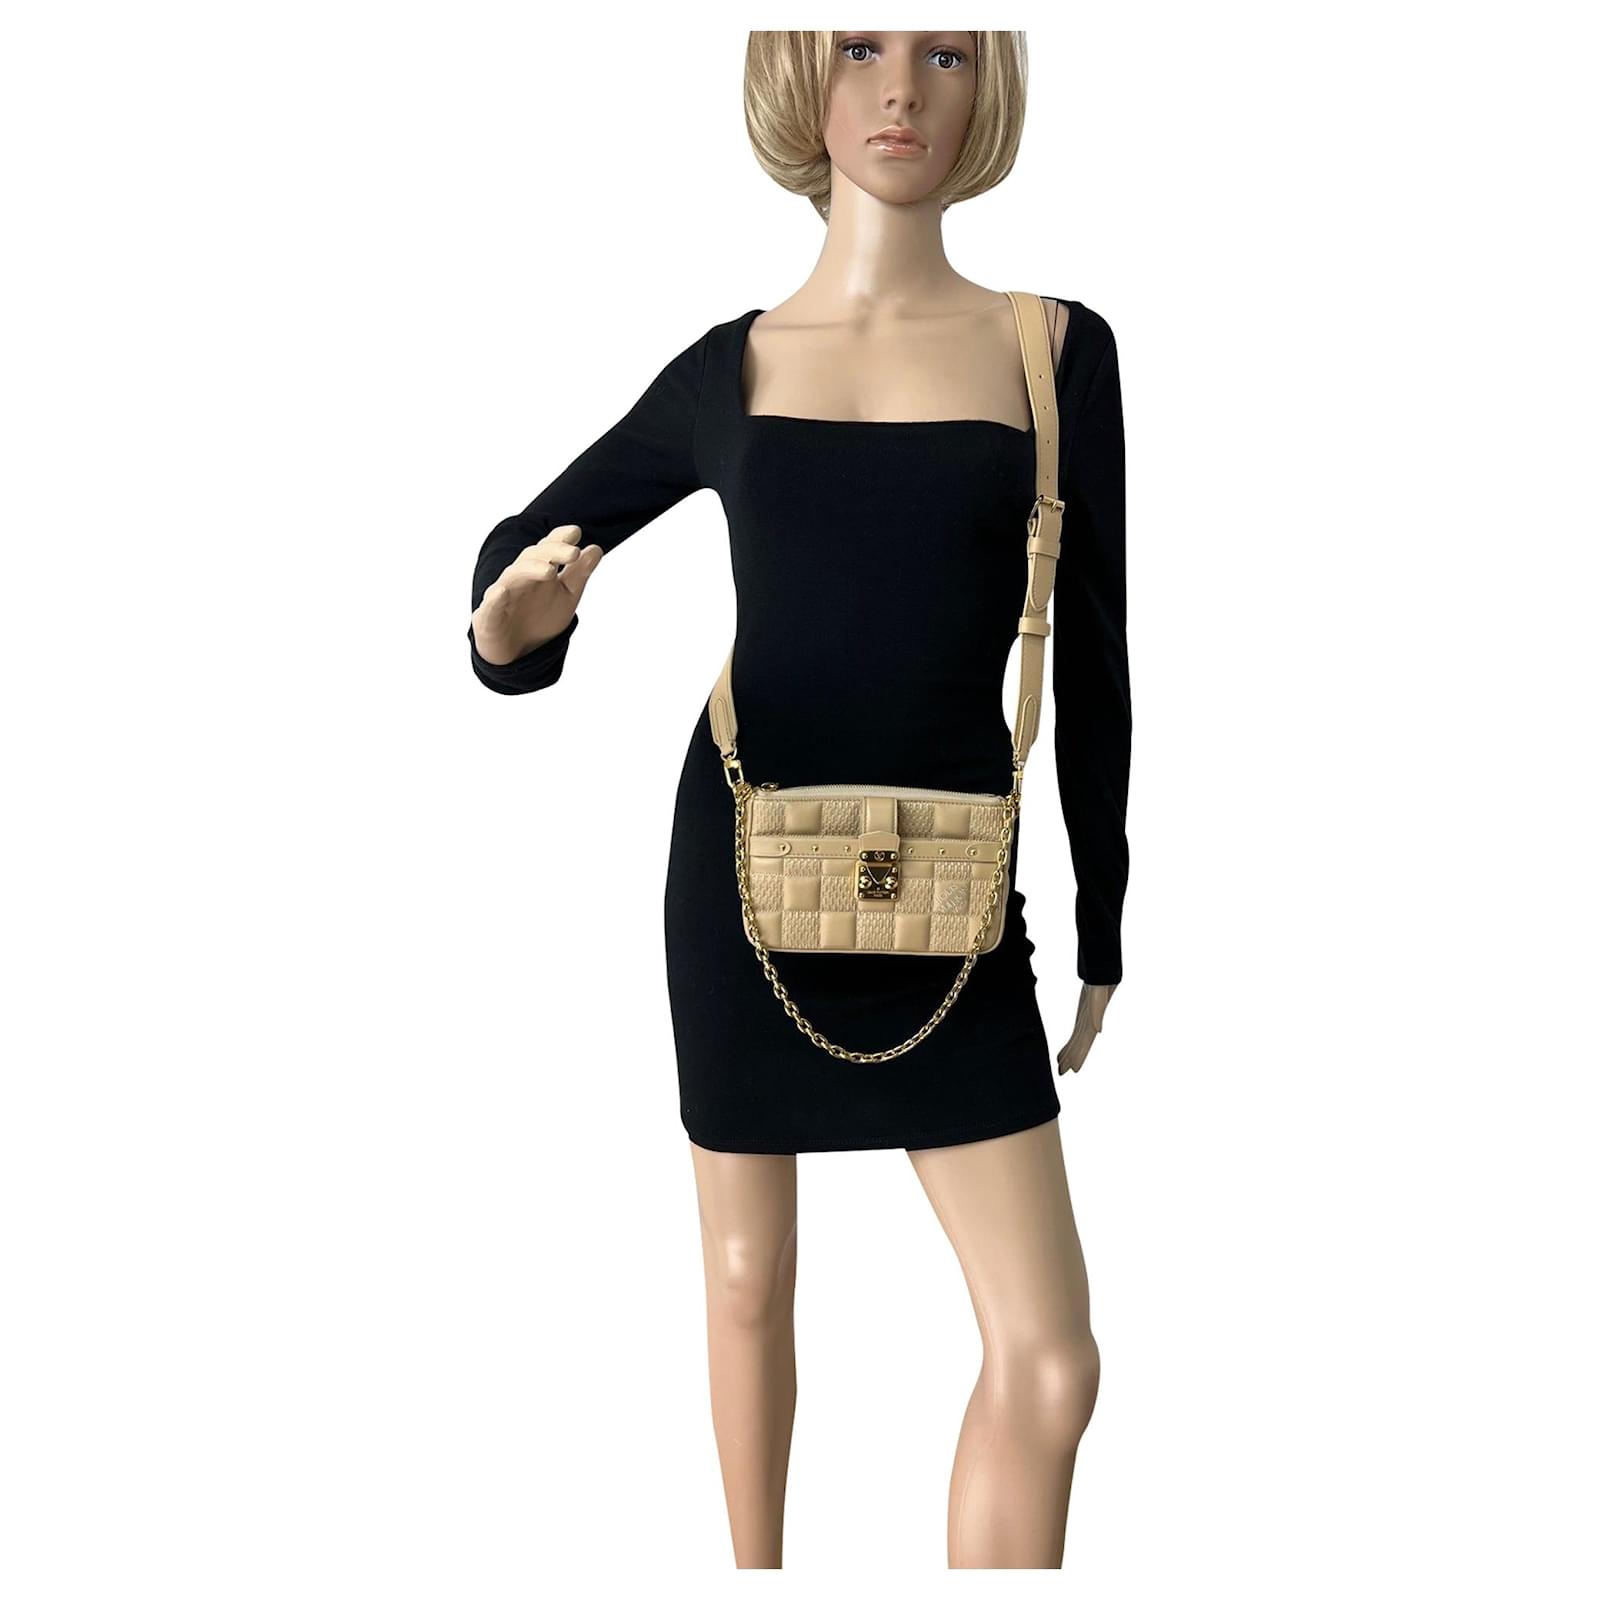 Louis Vuitton LV Women Pochette Troca Handbag Cashmere Beige Damier Quilt  Lamb Leather - LULUX